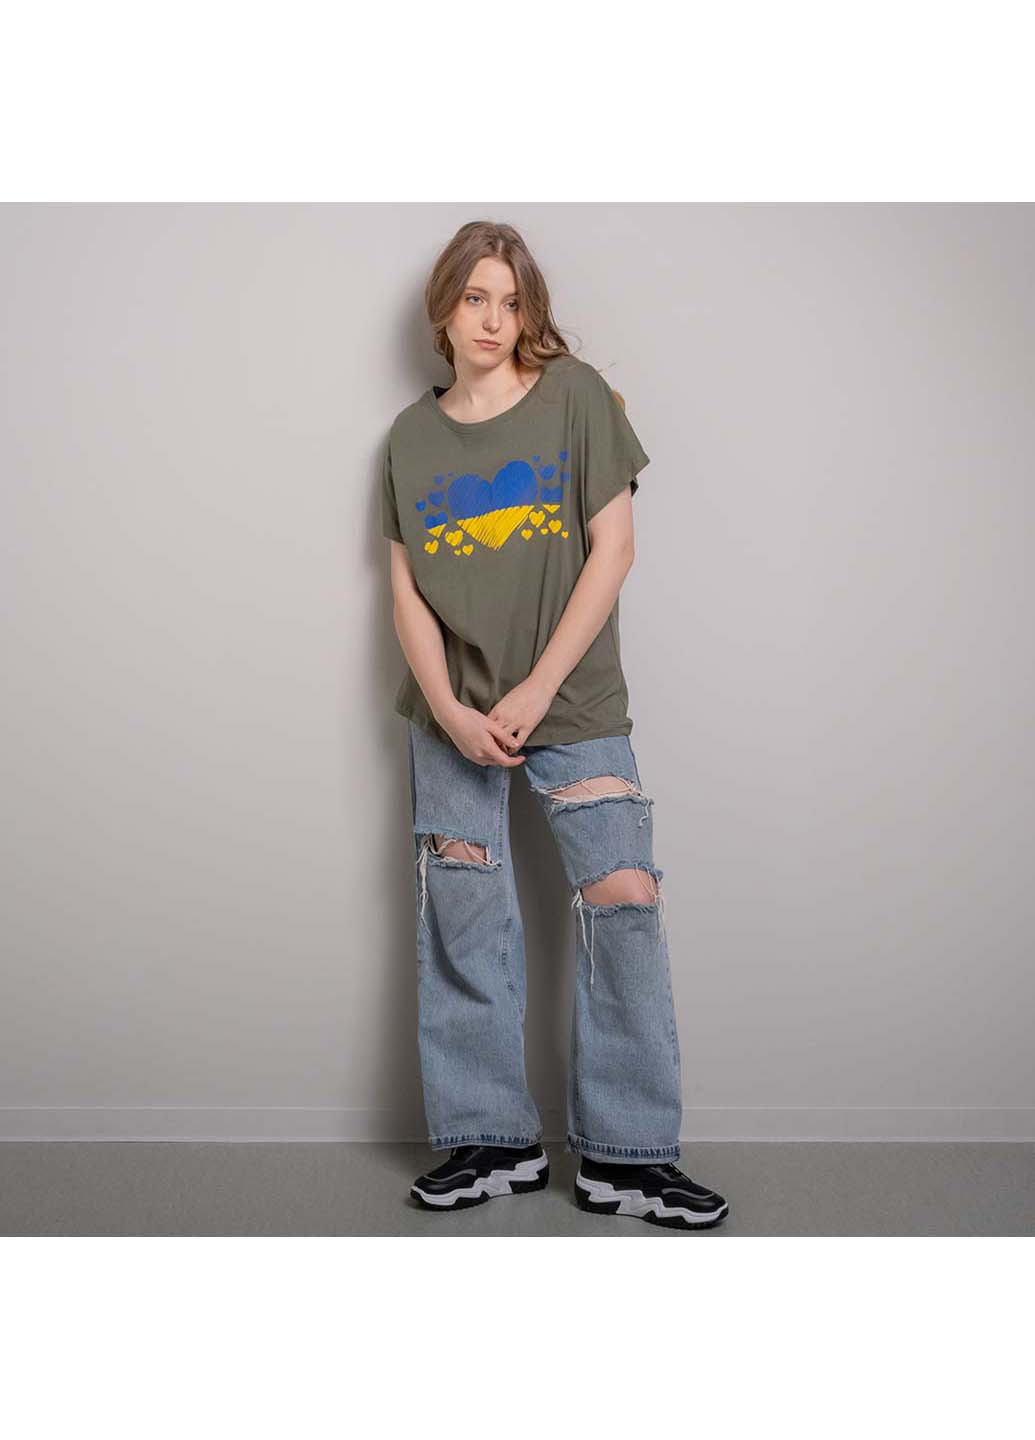 Хаки (оливковая) демисезон футболка Fashion 200086